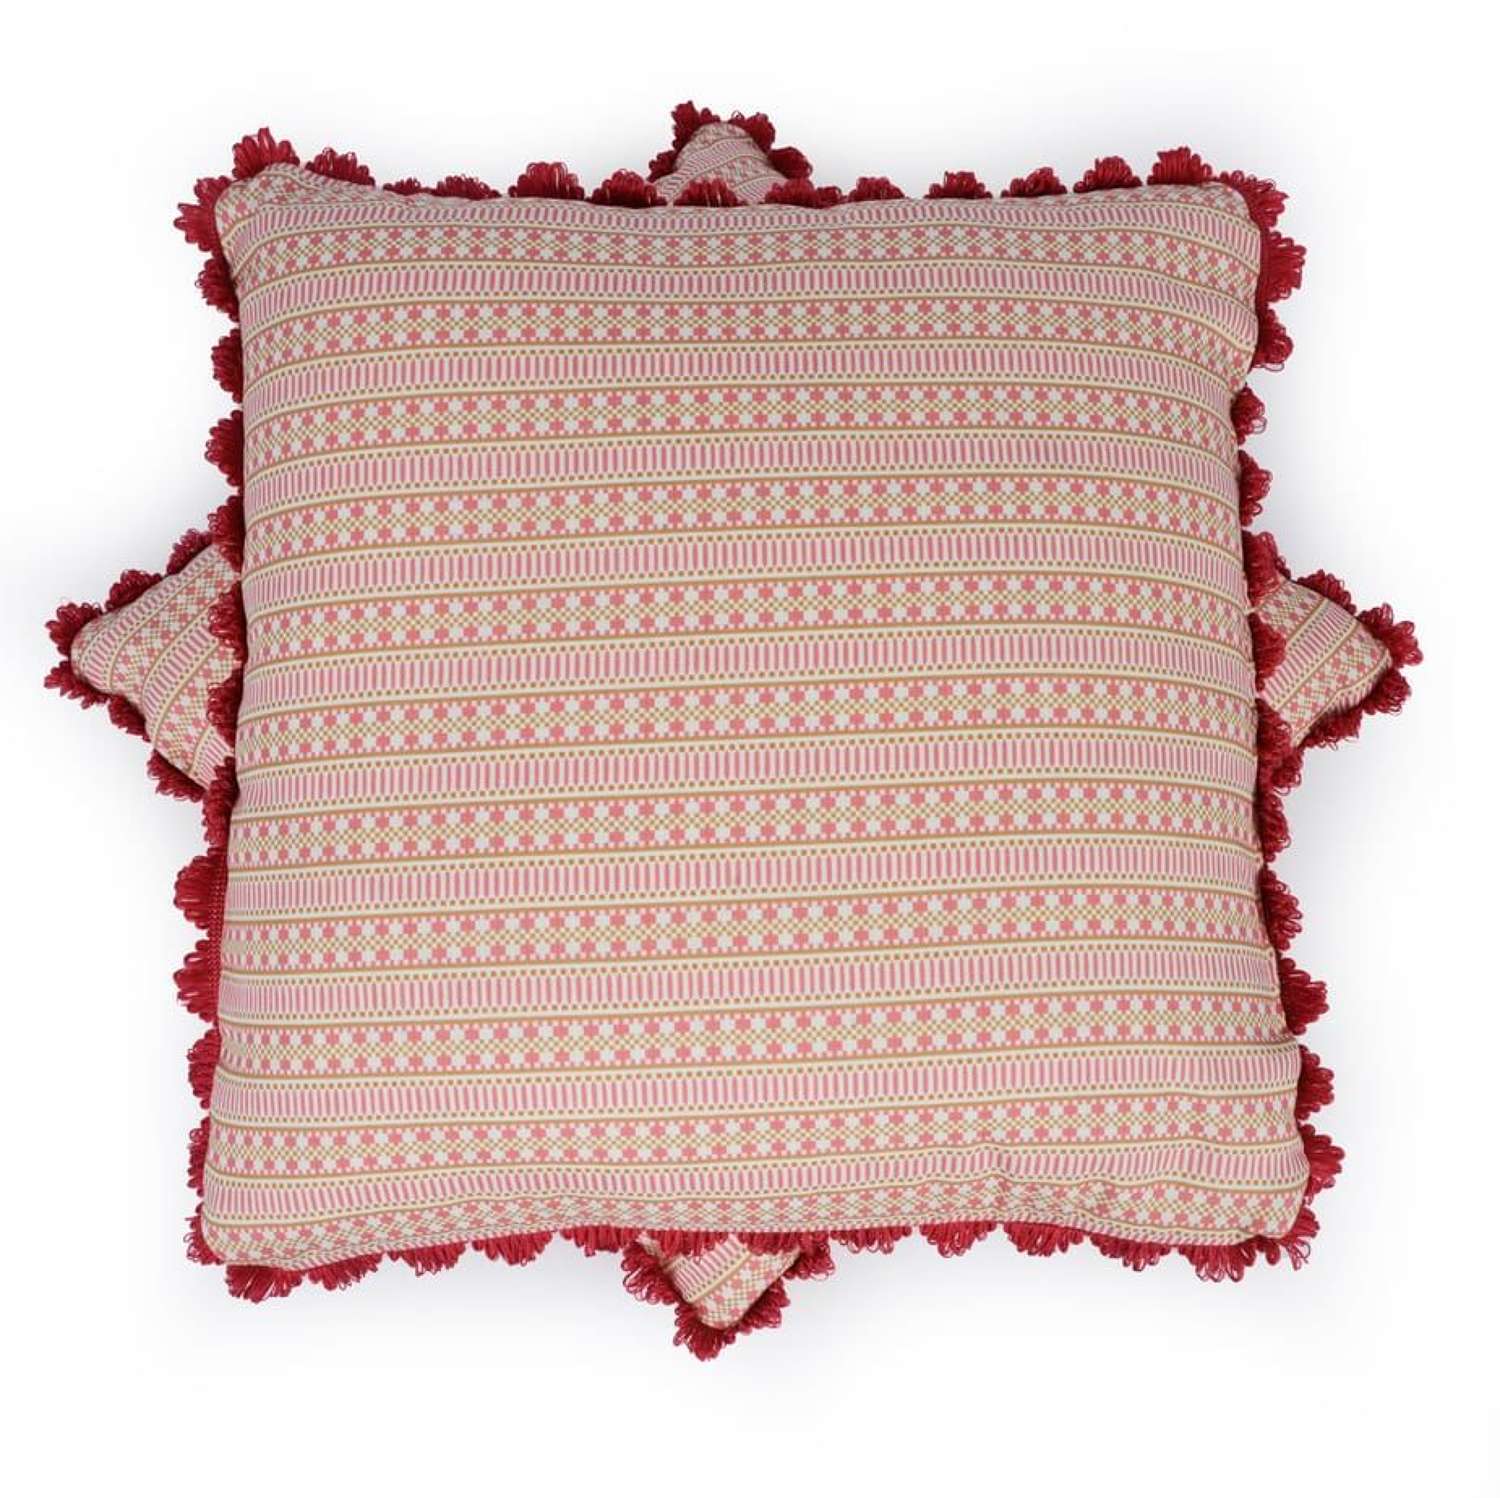 Handmade Charlotte Gaisford cushions